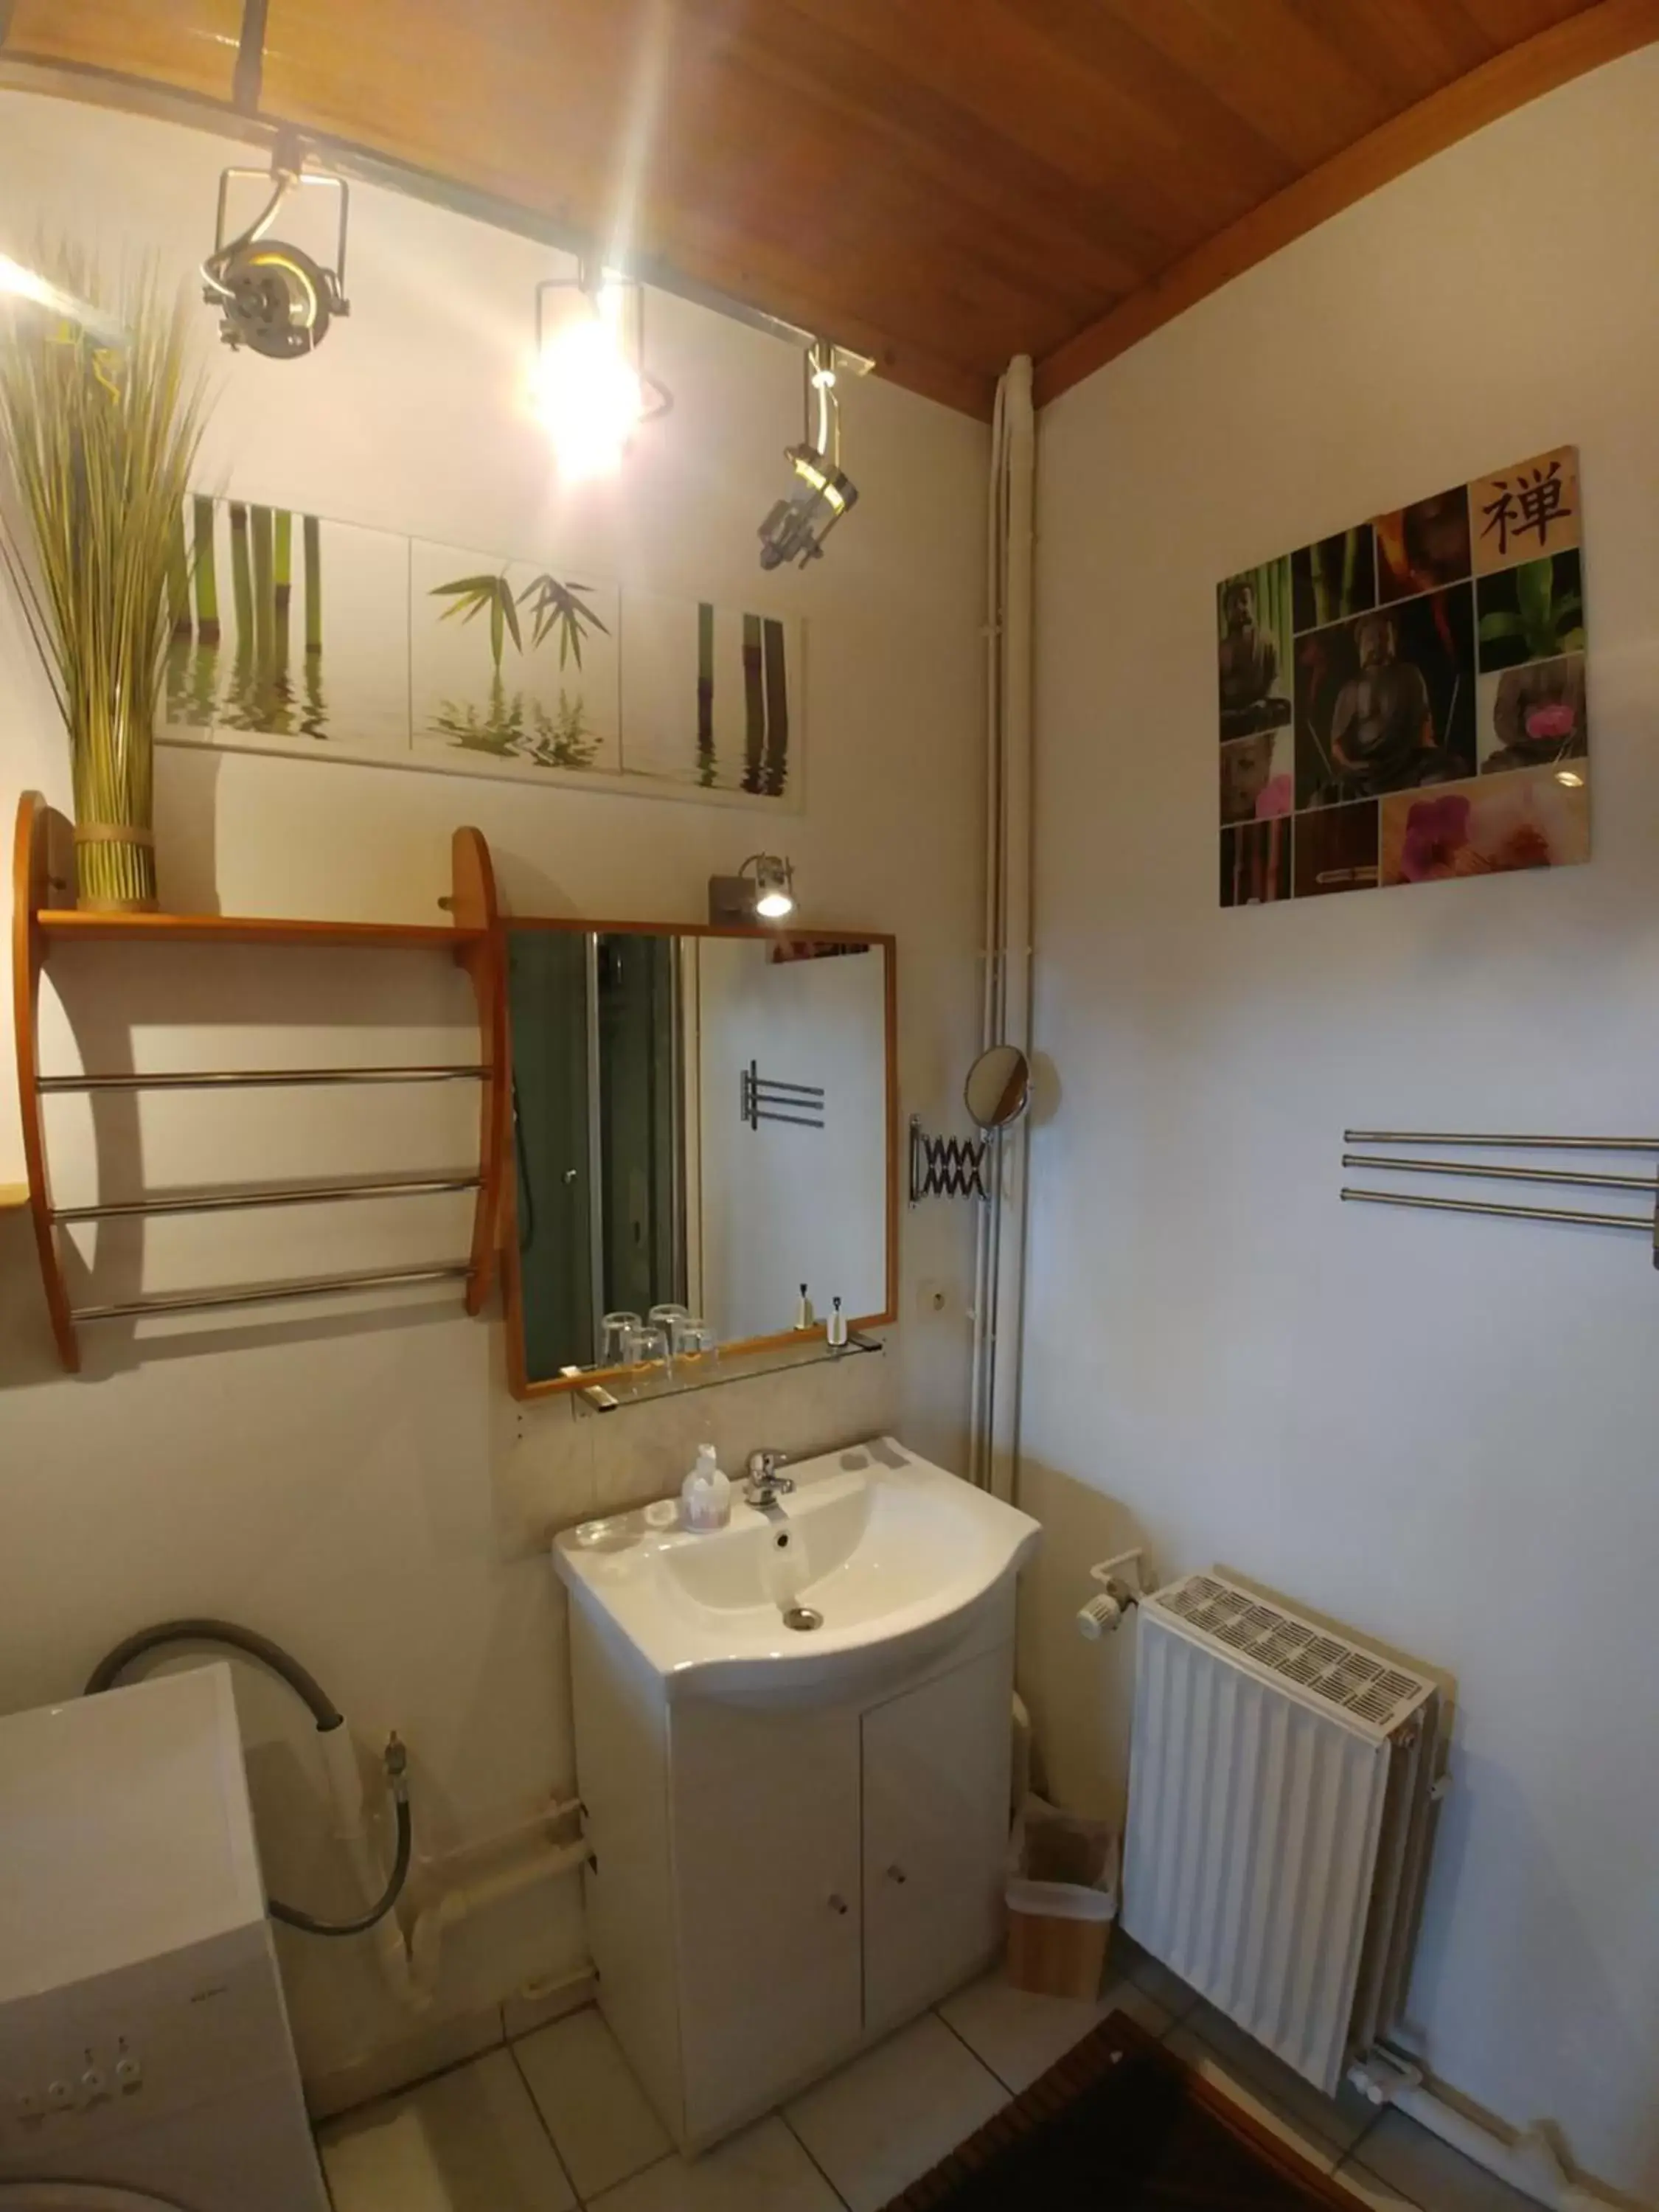 Bathroom in Manoir Le Cristal - Futuroscope a petit prix , grandes chambres familiales 5-6 personnes ,